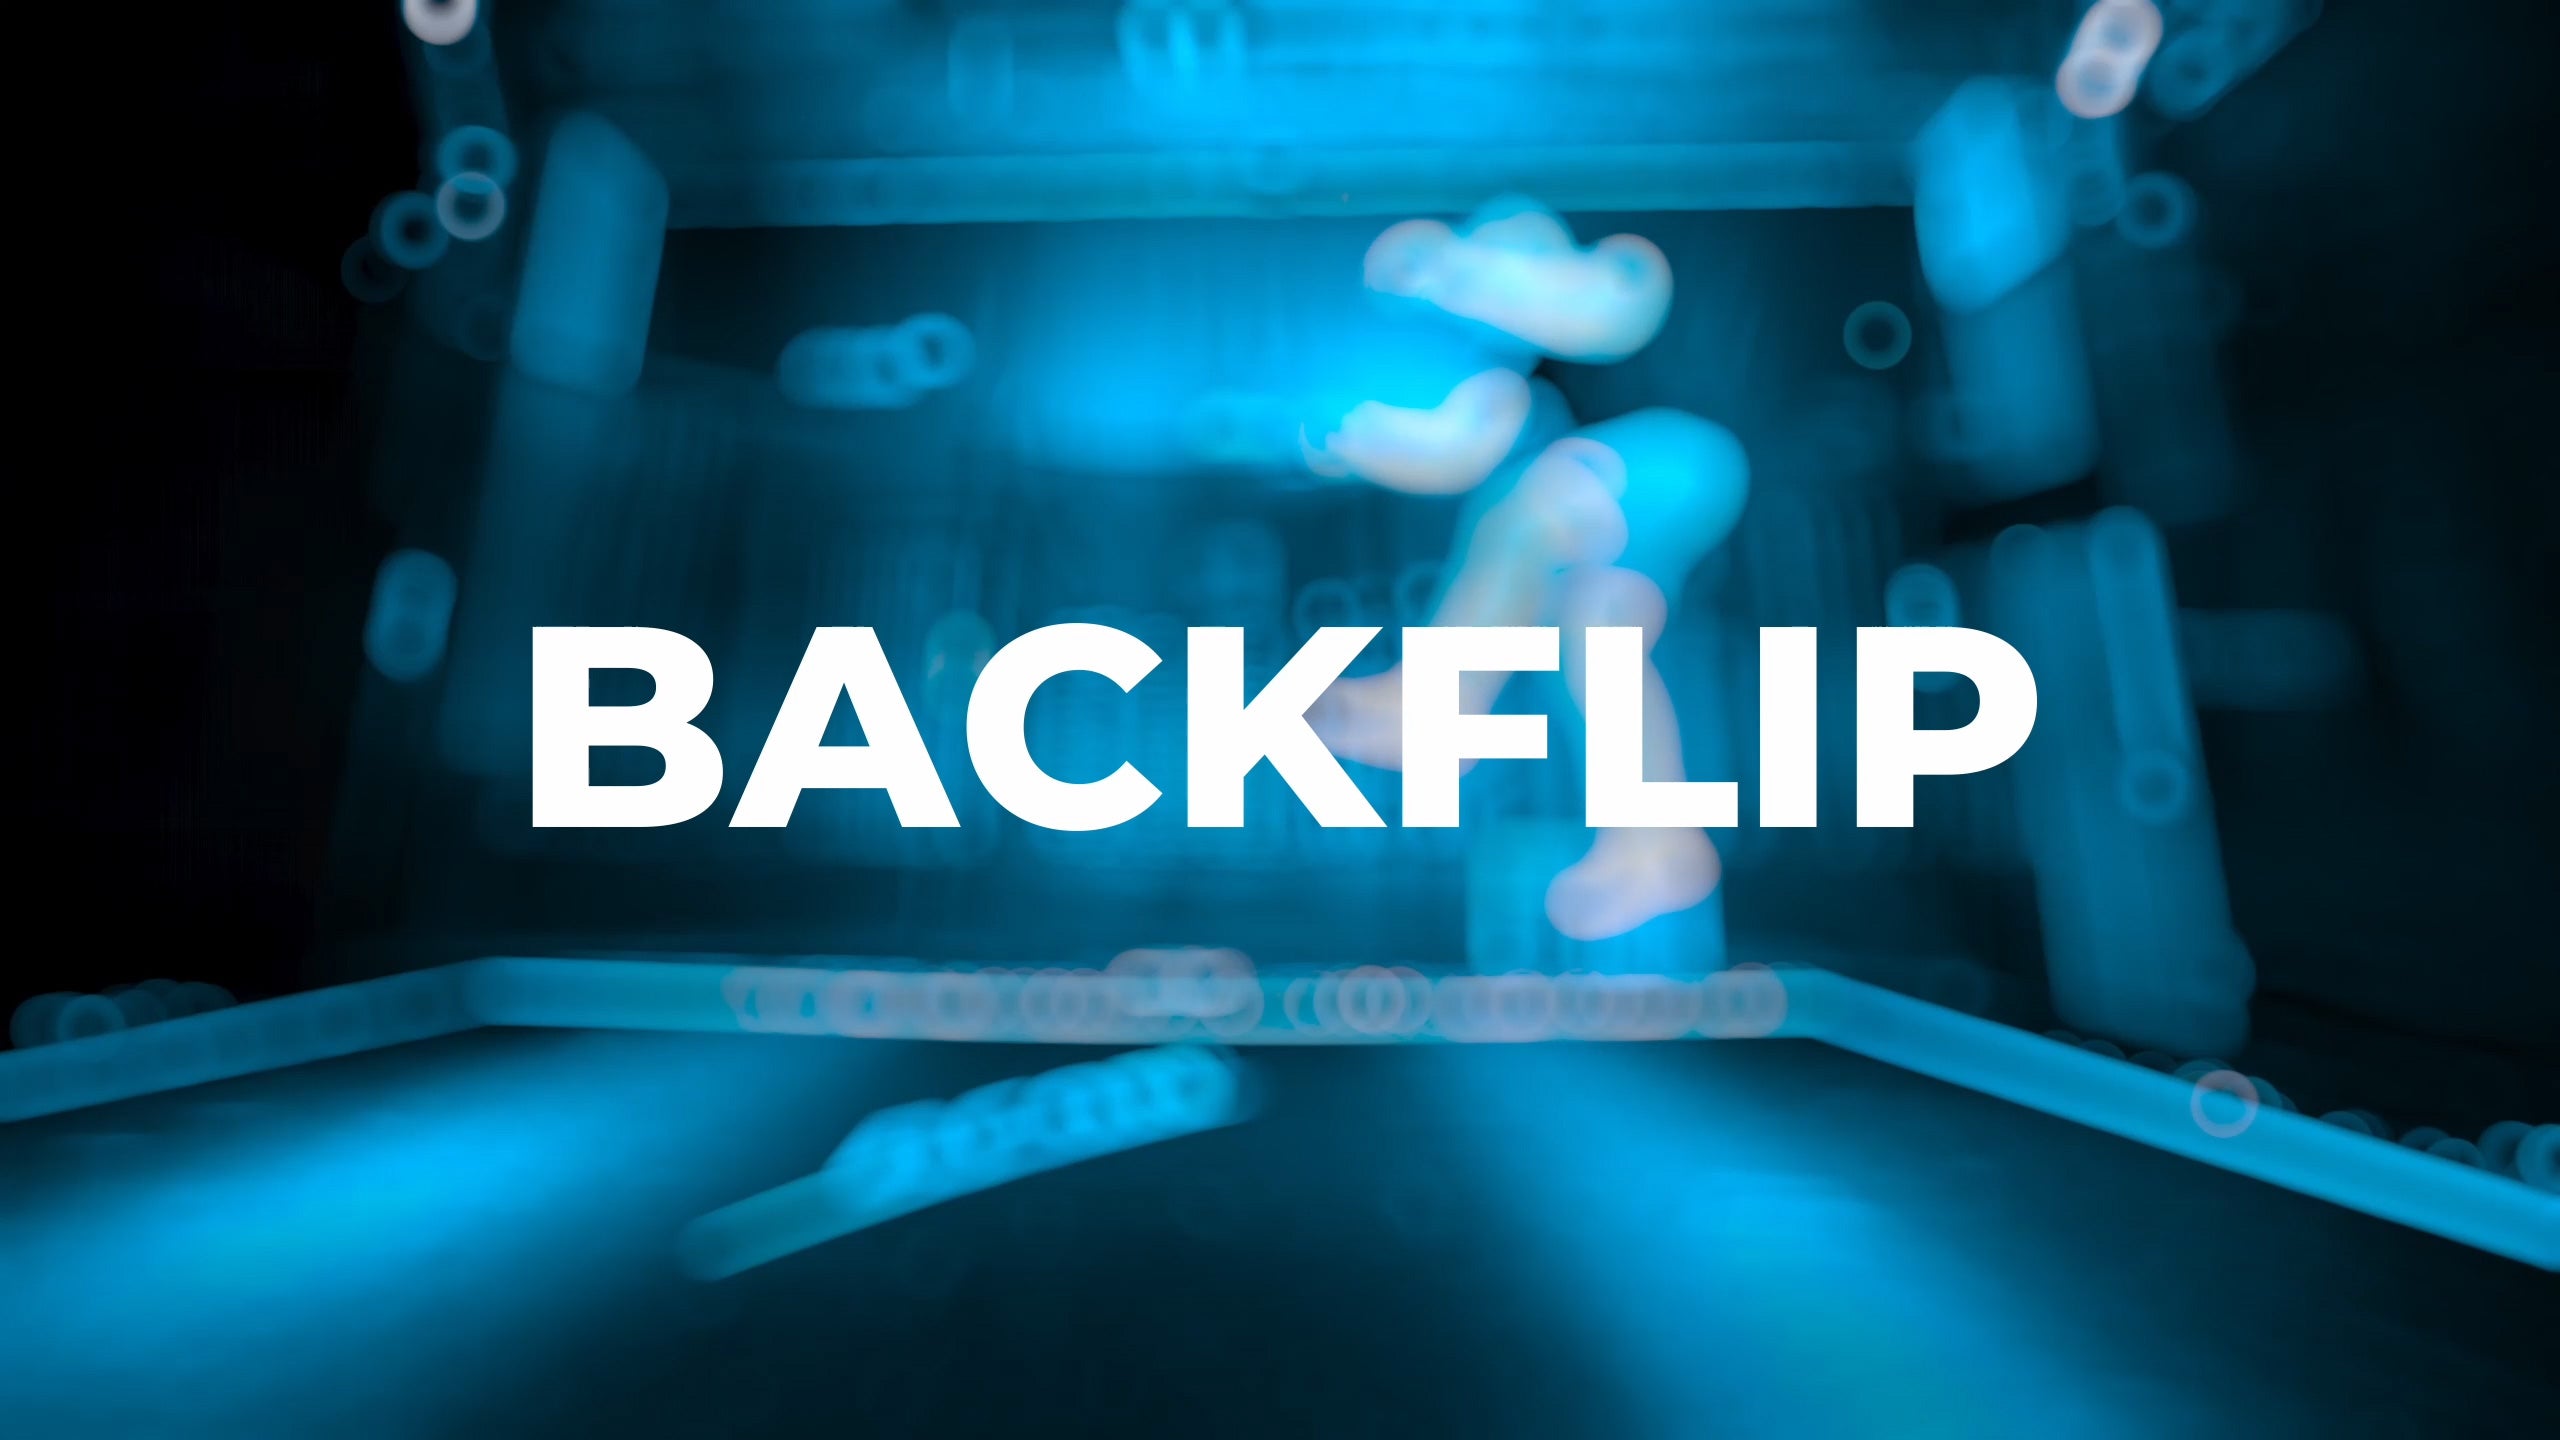 Backflip tutorial - placeholder image.